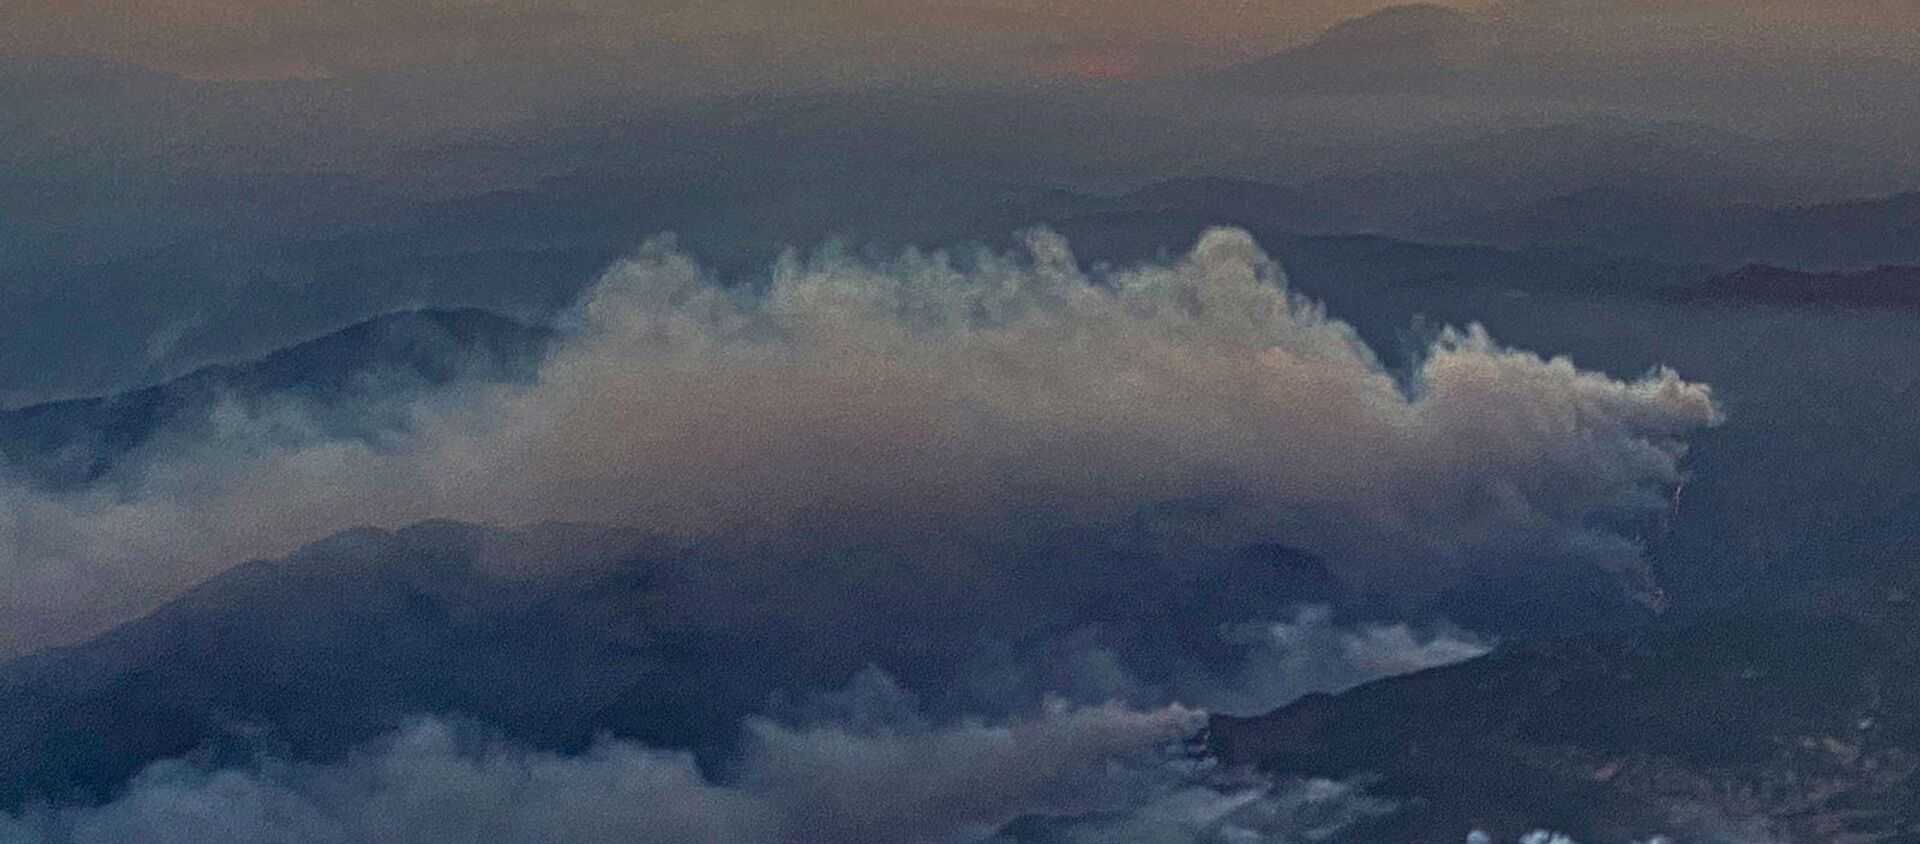 Kлубы дыма от лесных пожаров в районе Даламан на юге Турции - Sputnik Արմենիա, 1920, 08.08.2021